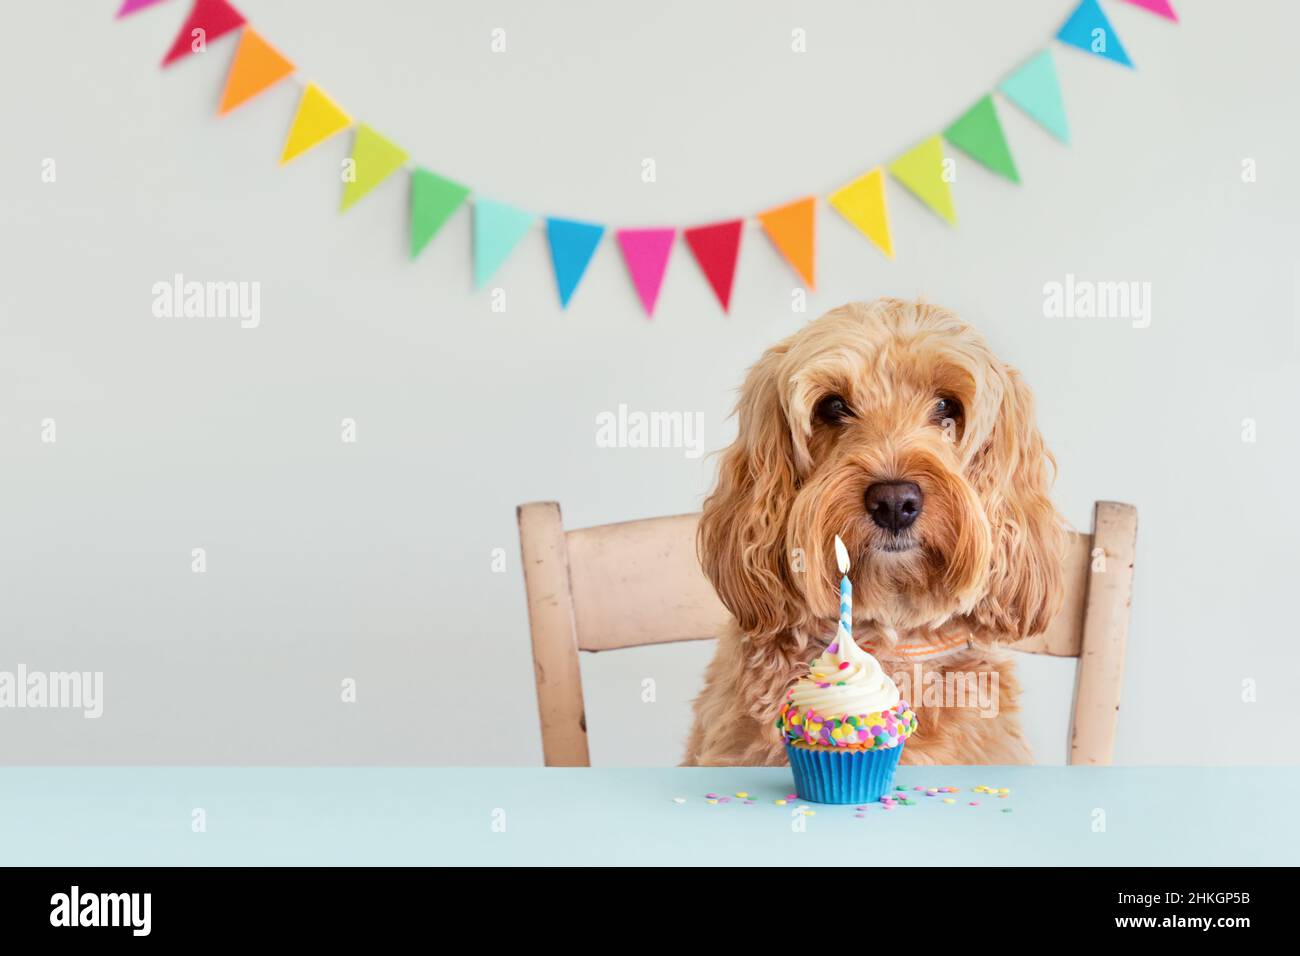 Lindo perro celebrando con cupcake de cumpleaños y bunting Foto de stock